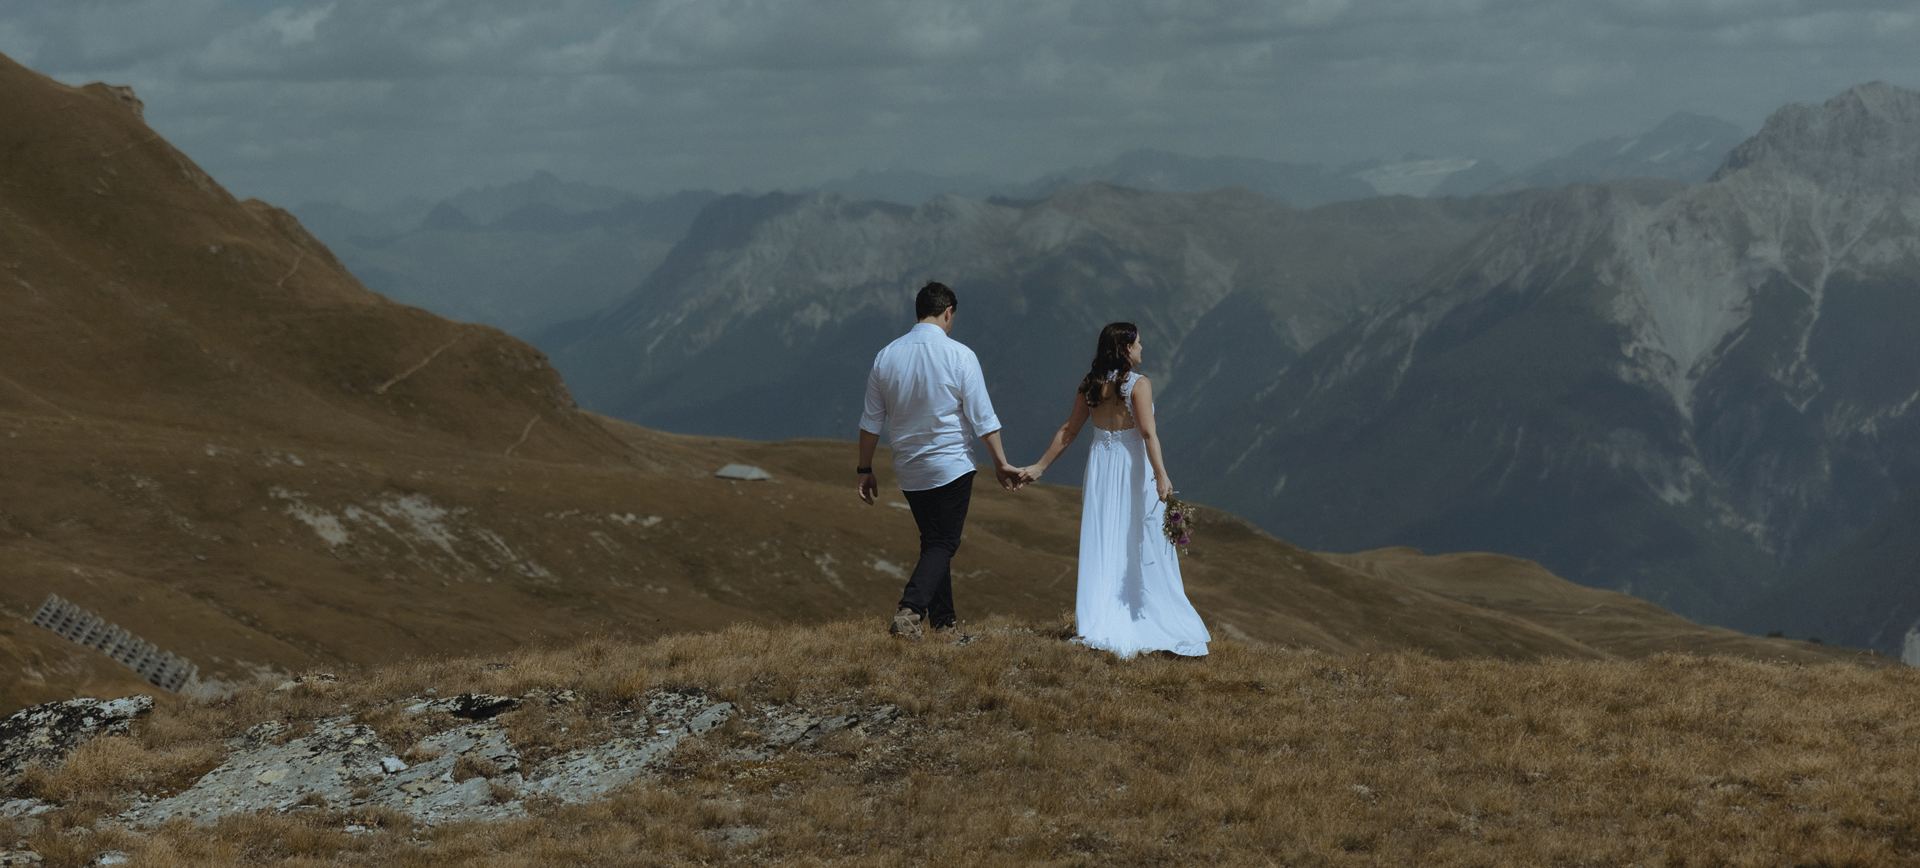 Wedding Adventure Elopement Package in the Swiss Alps